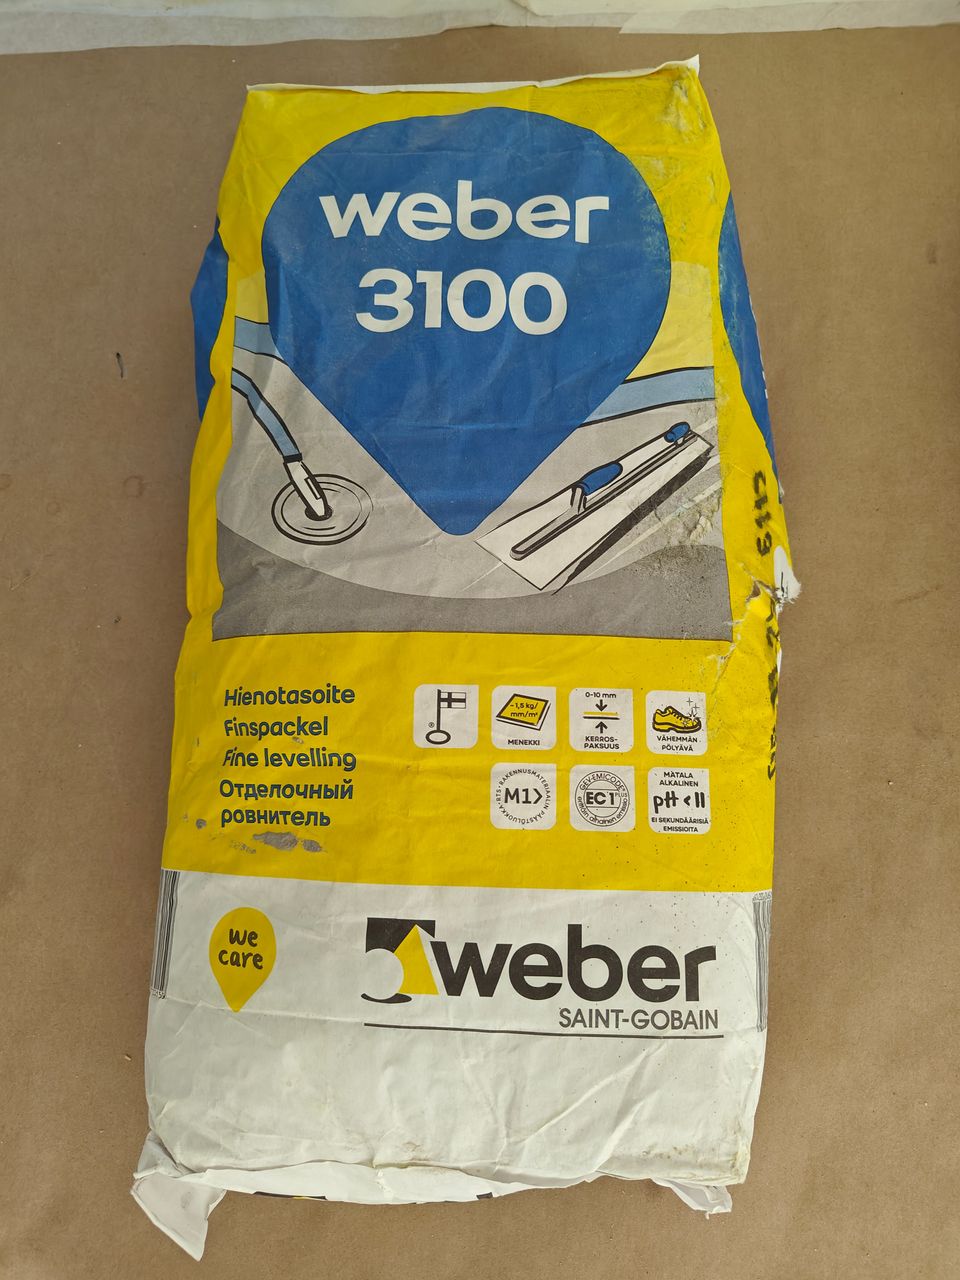 Weber 3100 hienotasoite